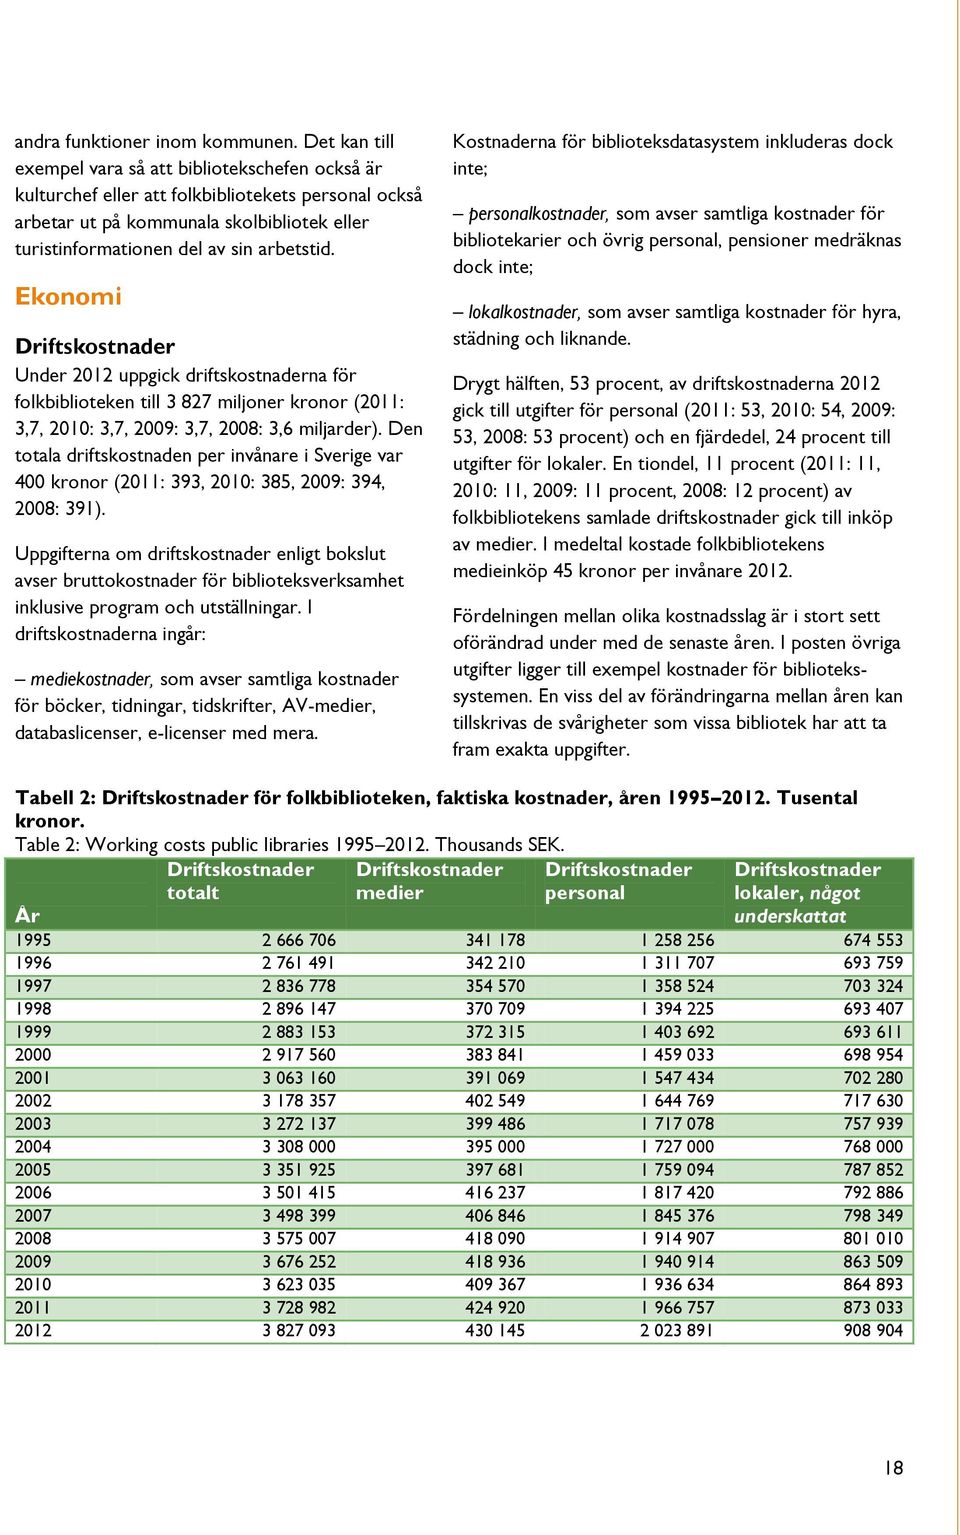 Ekonomi Driftskostnader Under 2012 uppgick driftskostnaderna för folkbiblioteken till 3 827 miljoner kronor (2011: 3,7, 2010: 3,7, 2009: 3,7, 2008: 3,6 miljarder).